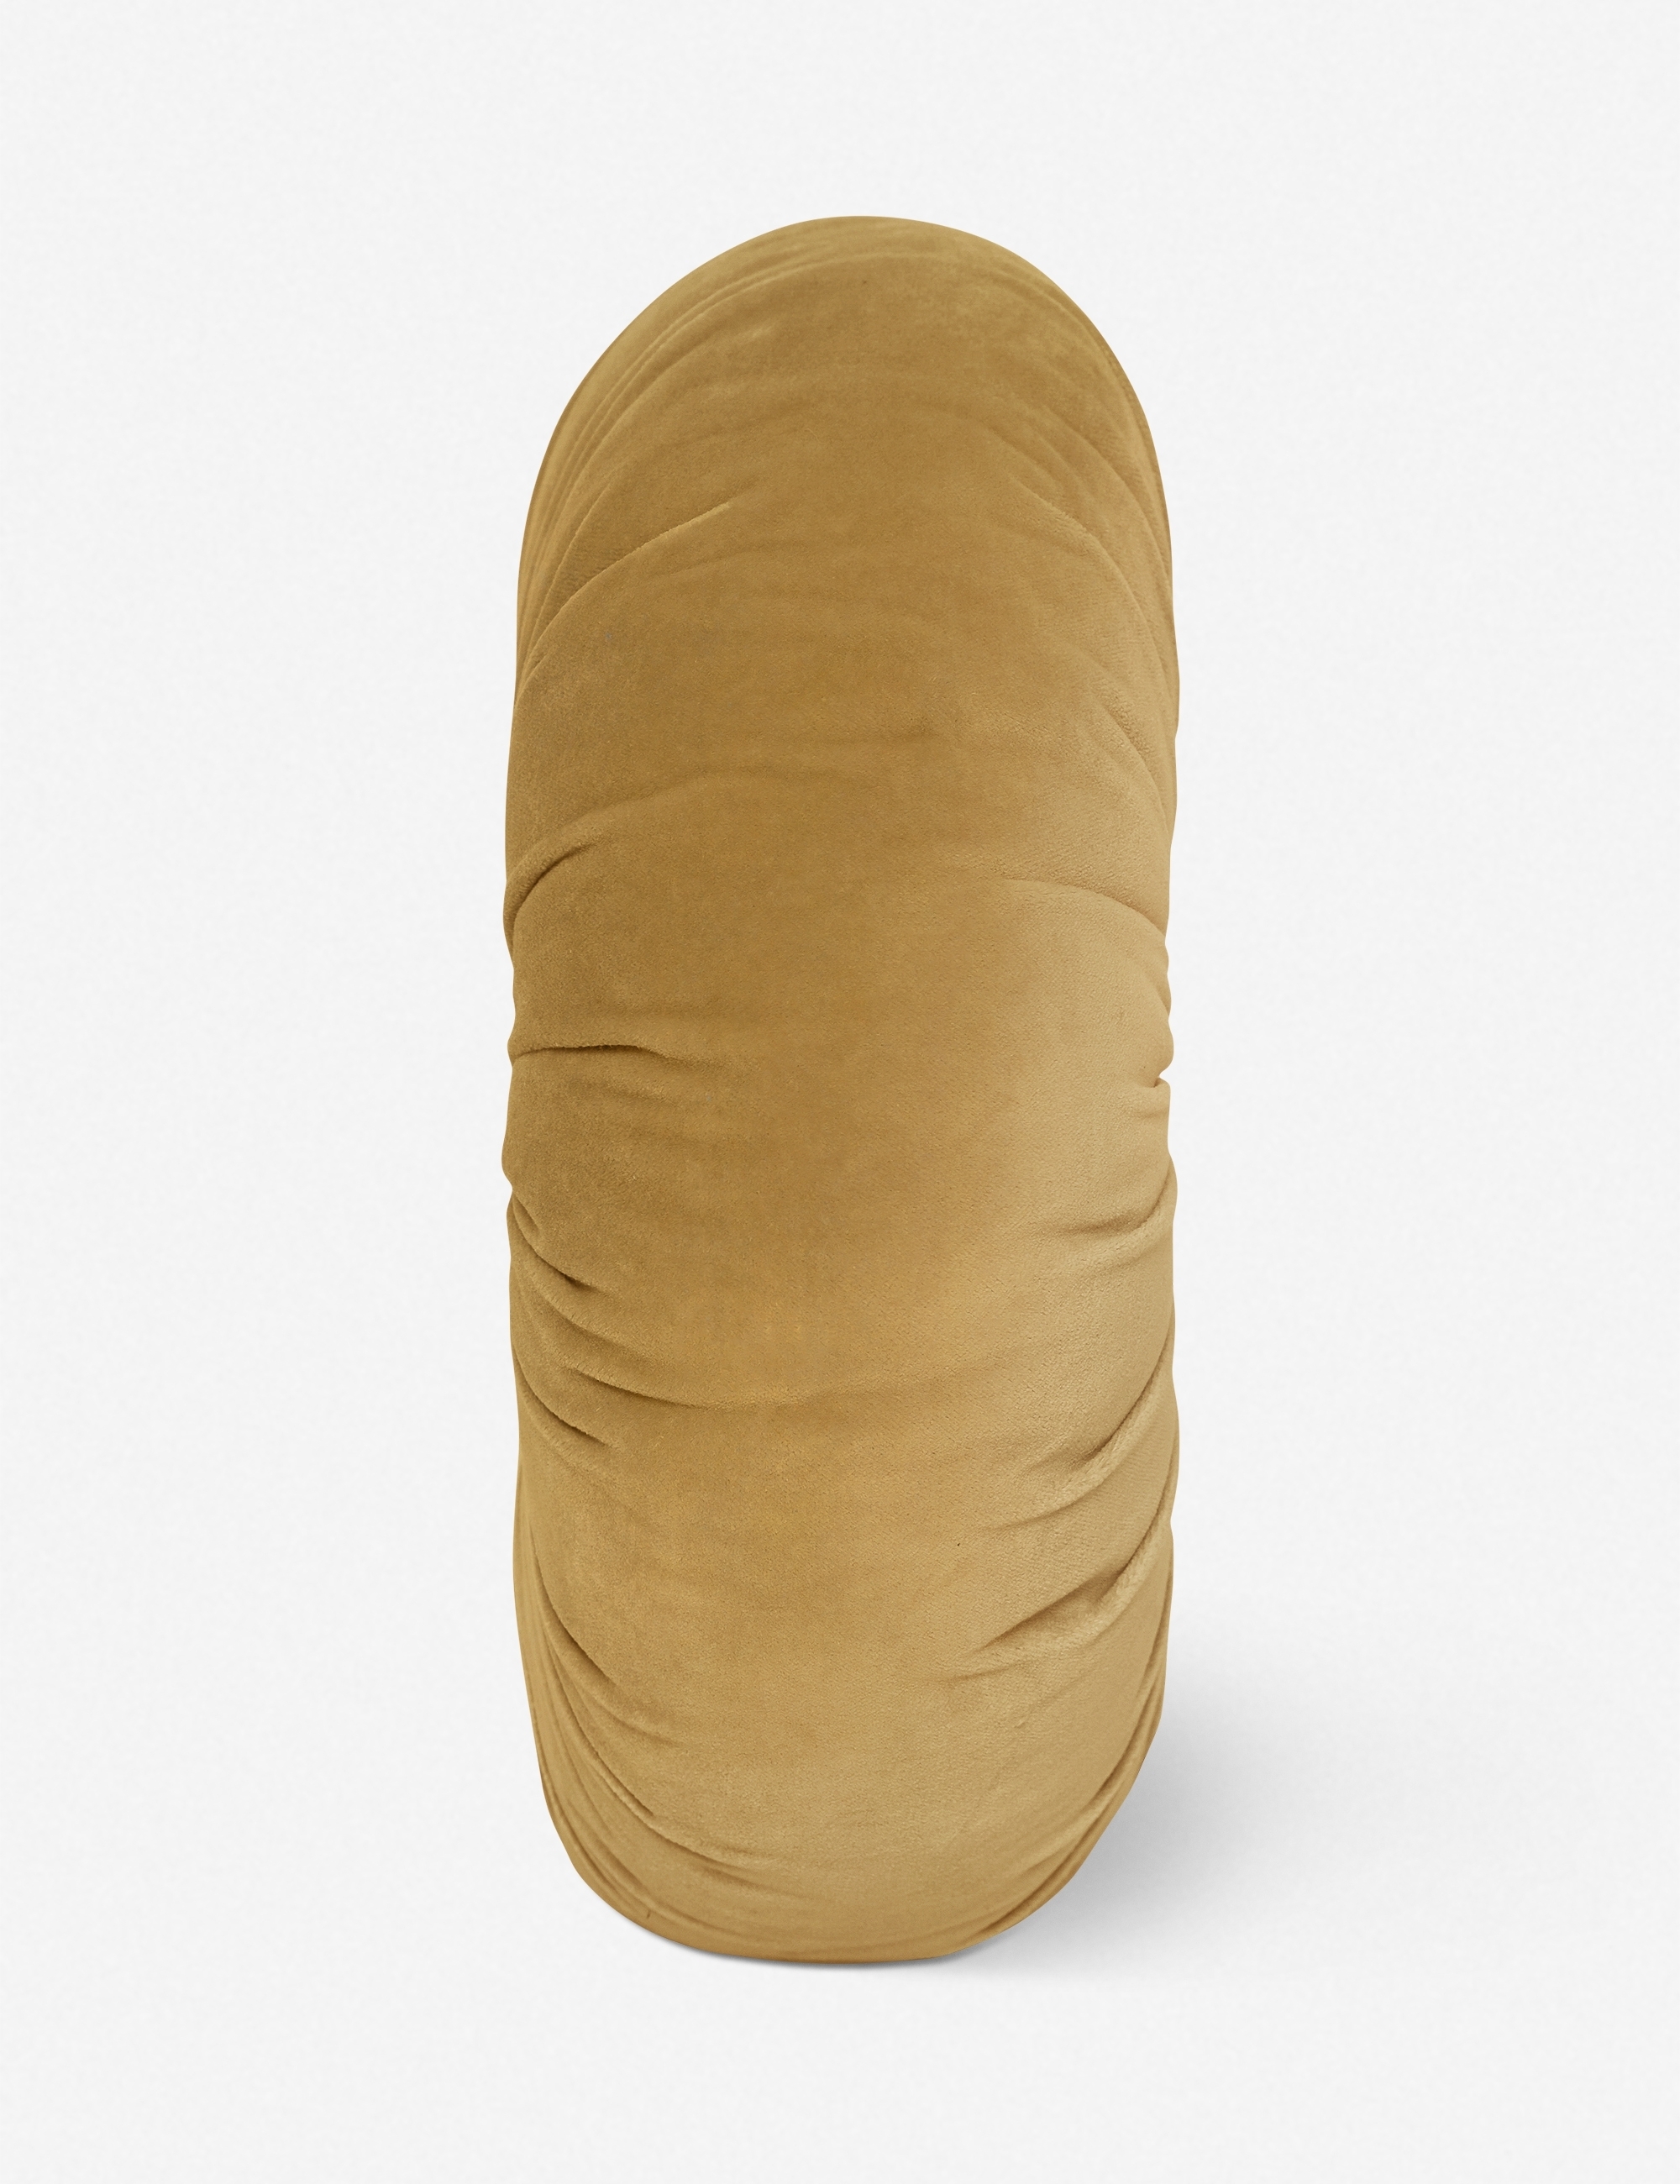 Monroe Velvet Round Pillow - Image 1